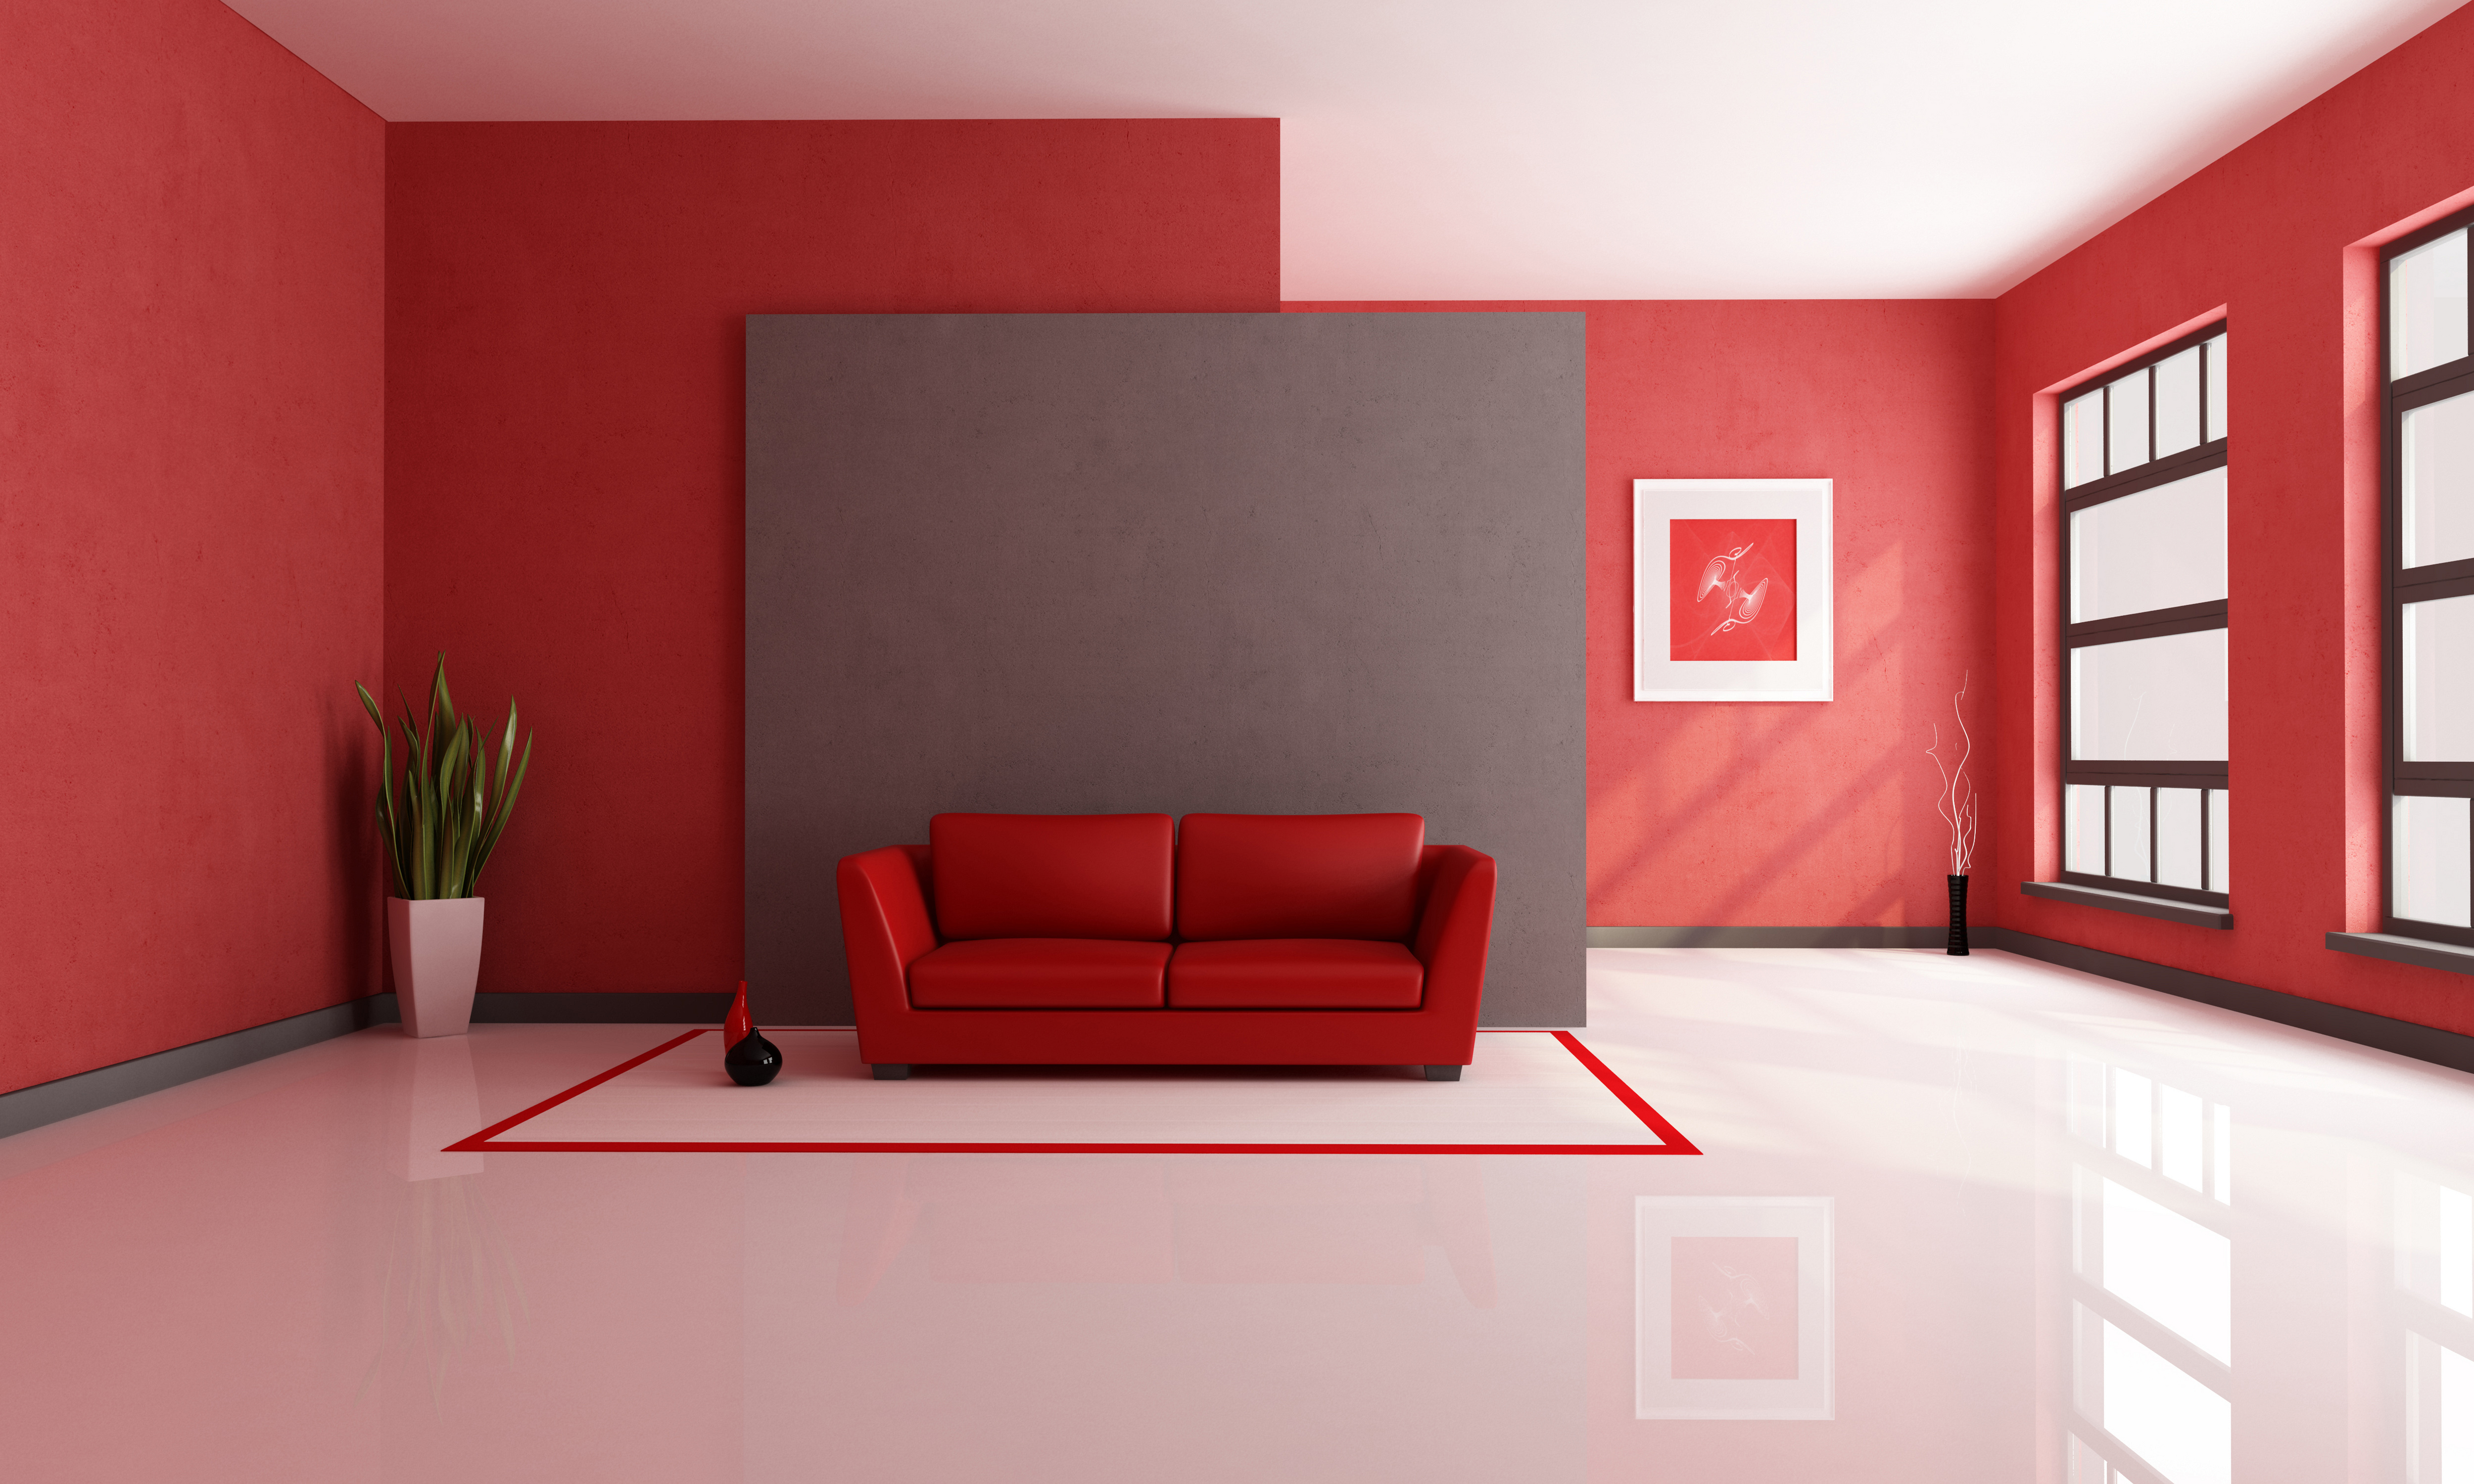 インテリアデザインの壁紙,赤,ルーム,インテリア・デザイン,リビングルーム,家具